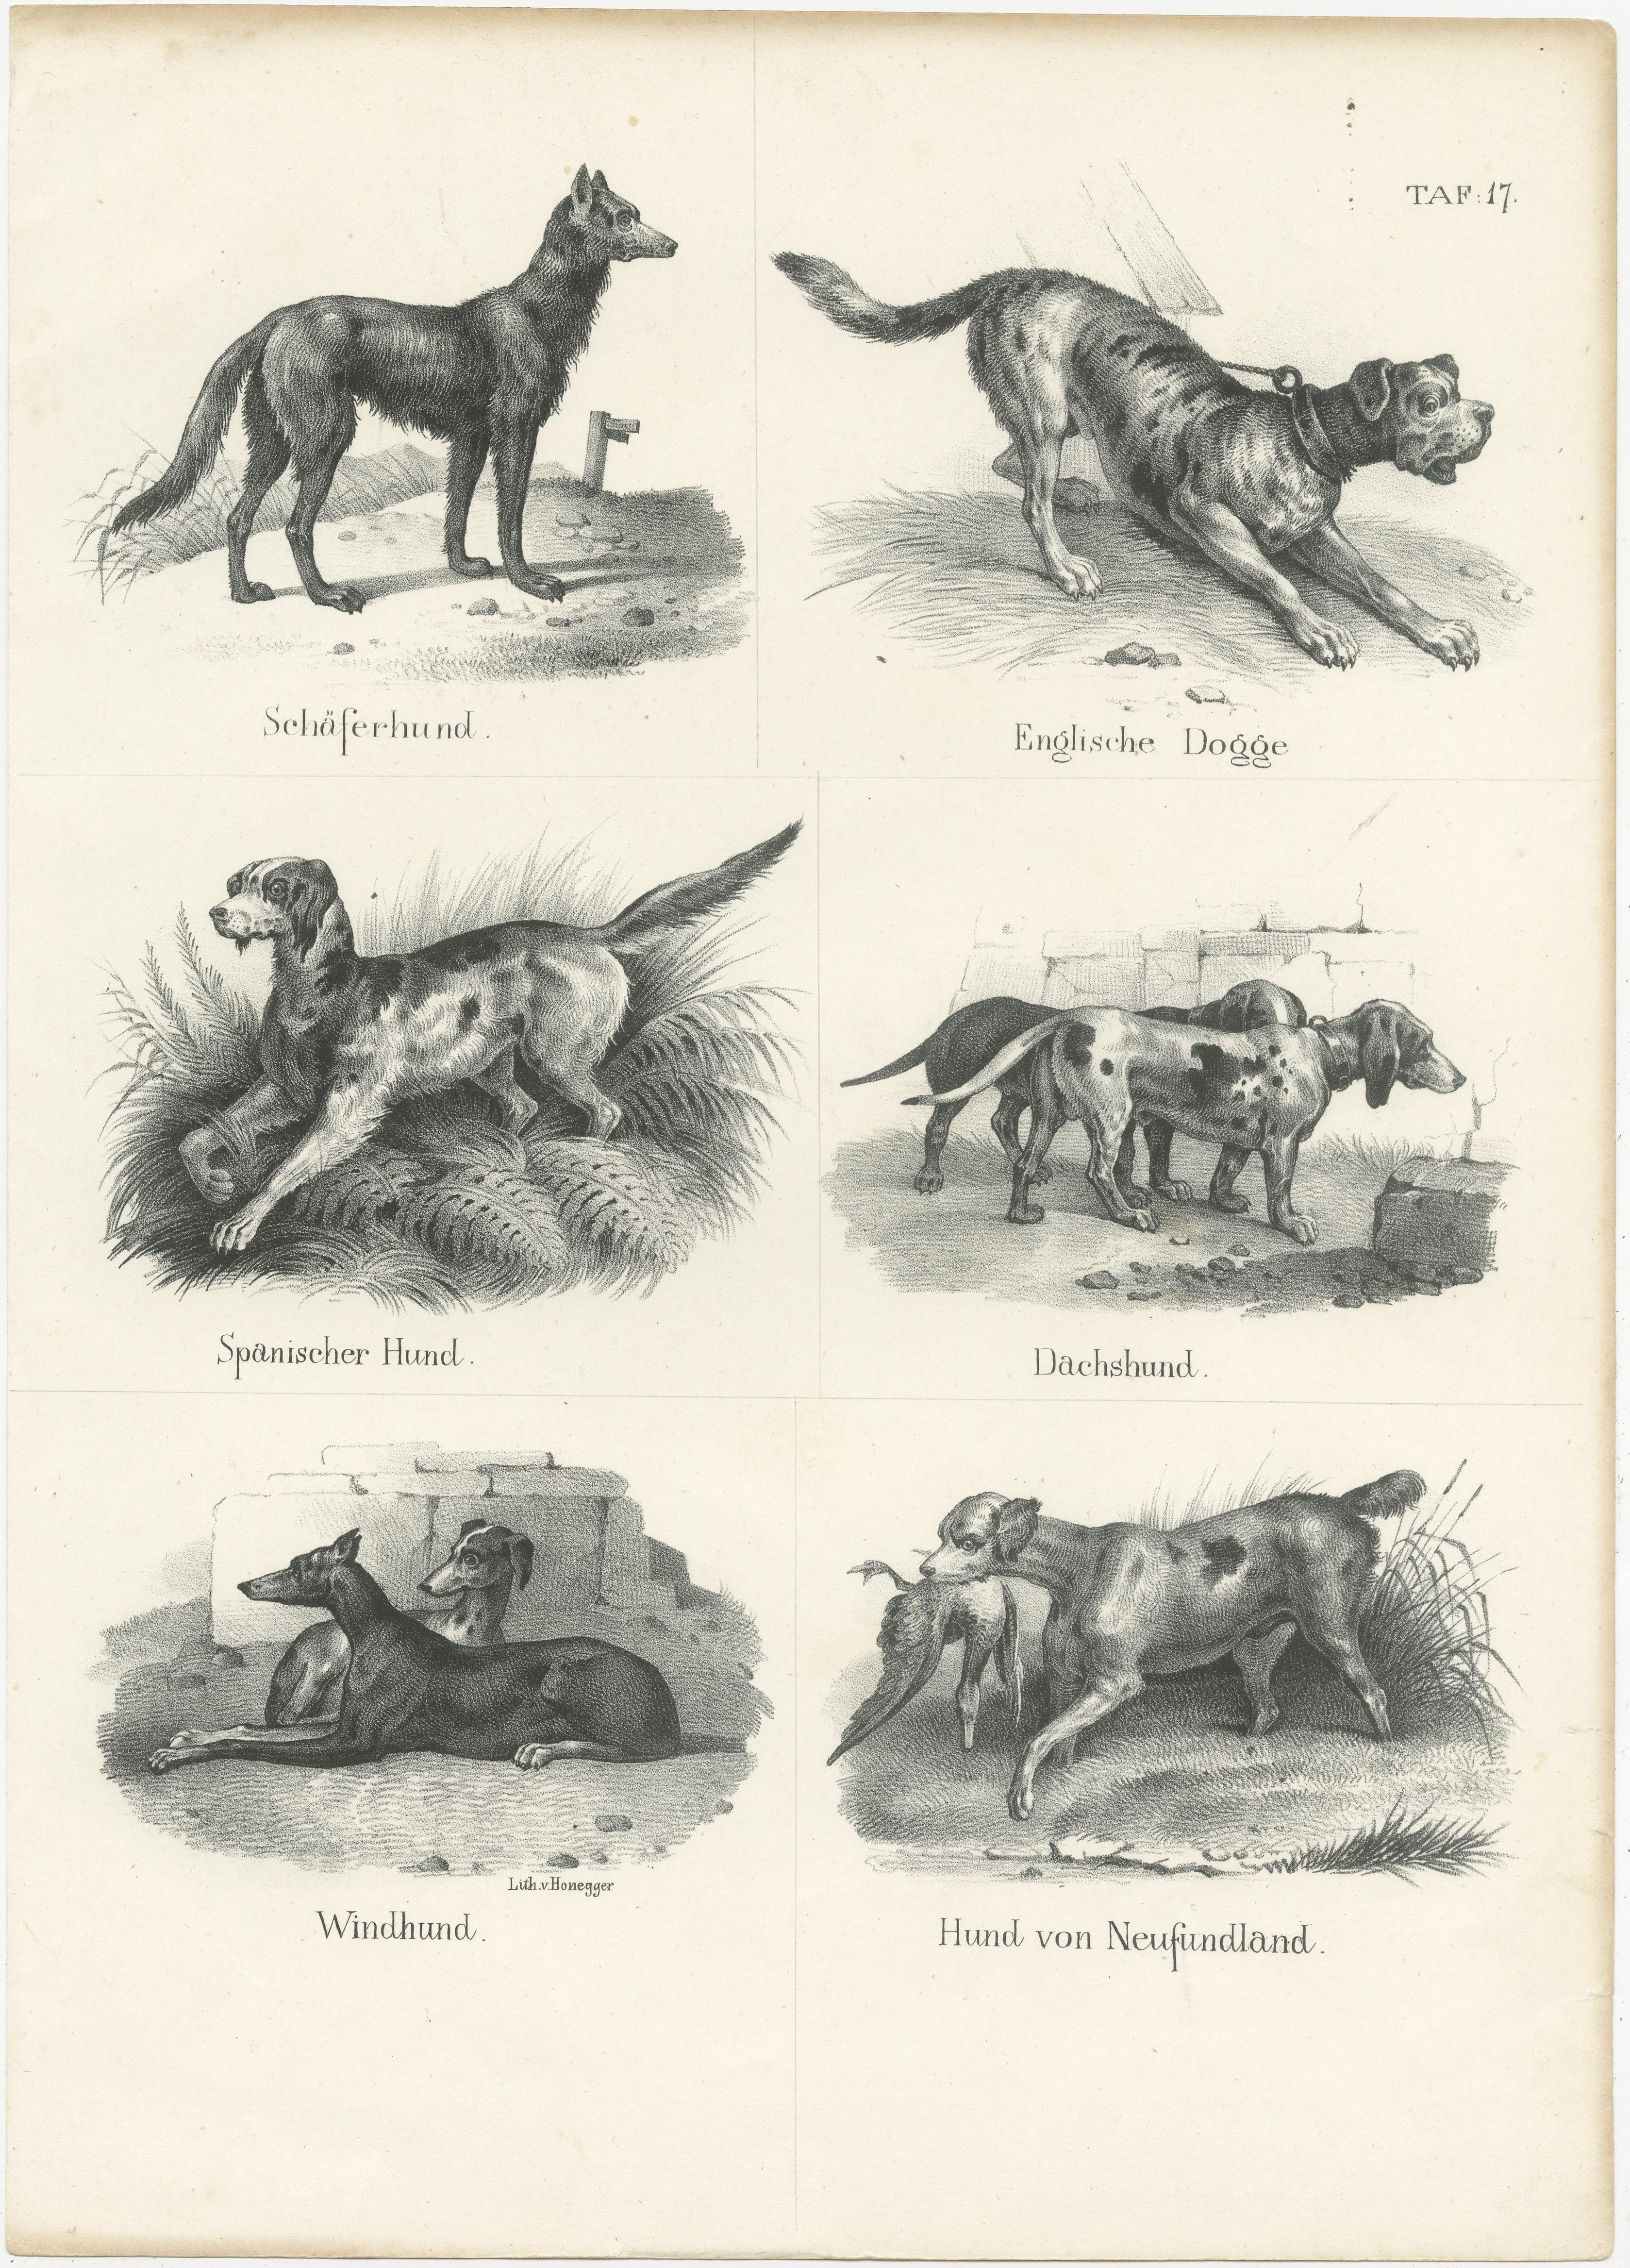 Antique print titled 'Schäferhund, Englisch Dogge, Spanischer Hund , Dachshund, Windhund, Hund von Neufundland'. This print originates from 'Naturgeschichte der Säugetiere' by Schinz. Published circa 1840. Lithographed by Honegger. 

The images are